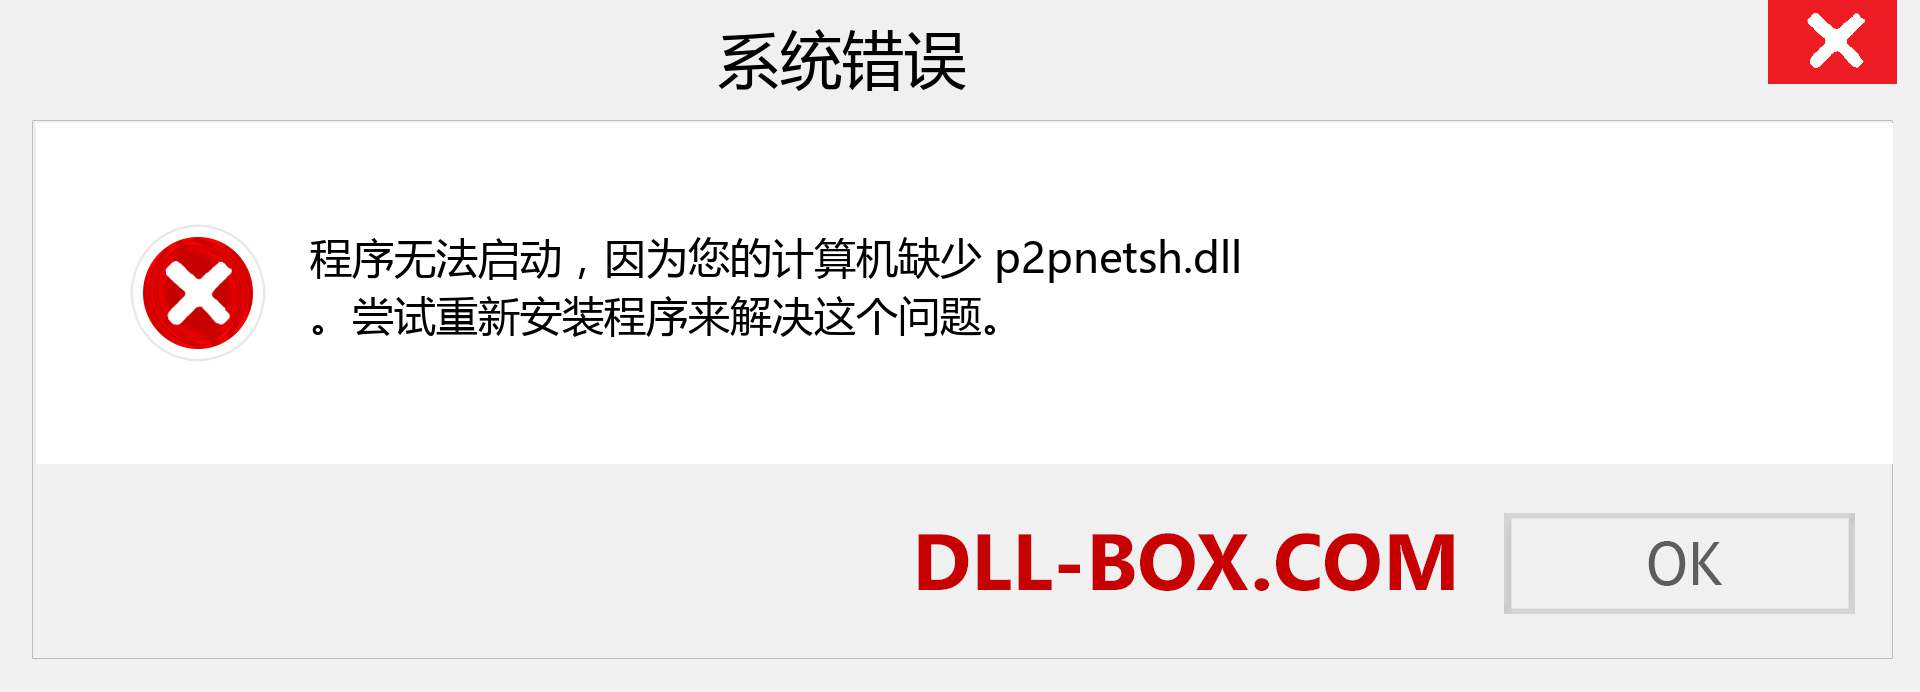 p2pnetsh.dll 文件丢失？。 适用于 Windows 7、8、10 的下载 - 修复 Windows、照片、图像上的 p2pnetsh dll 丢失错误